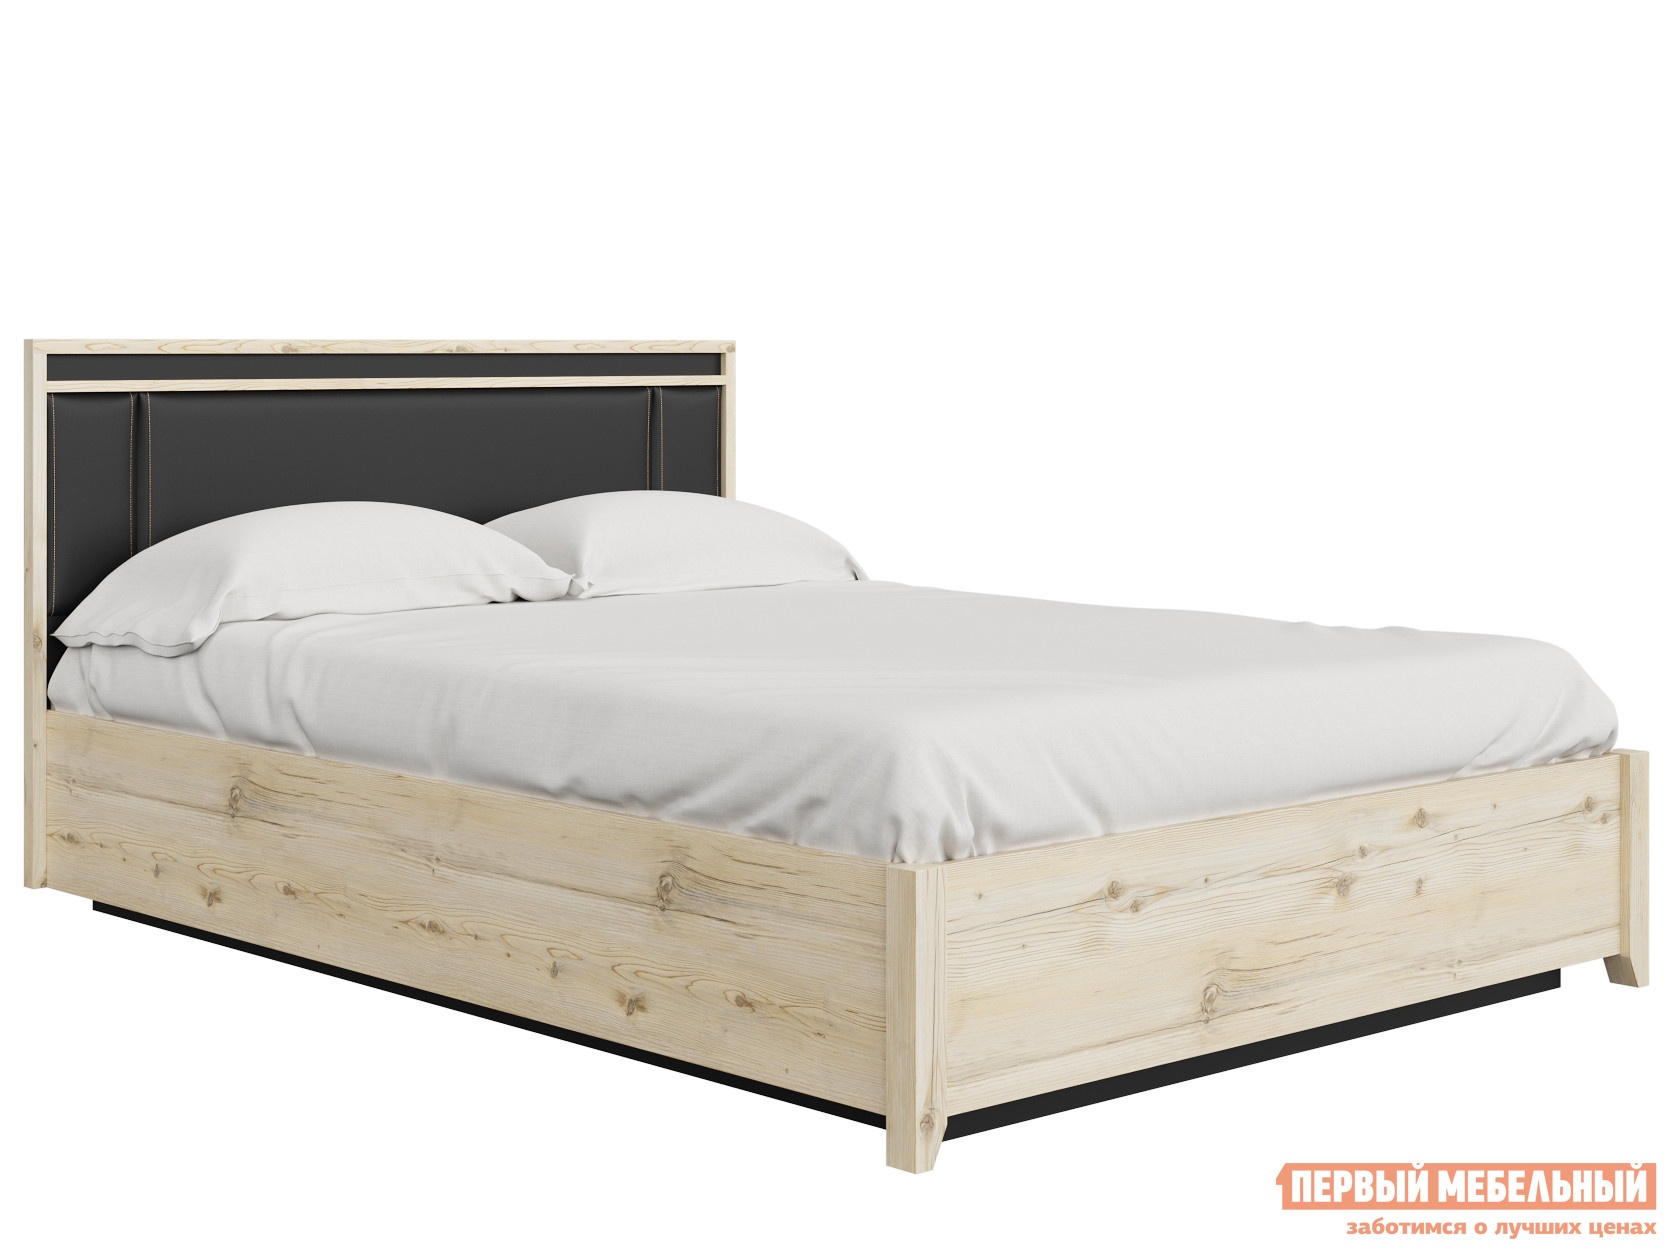 Двуспальная кровать натура гаскон пайн черный, экокожа, 140х200 см, анатомическое основание с подъемным механизмом preview 1